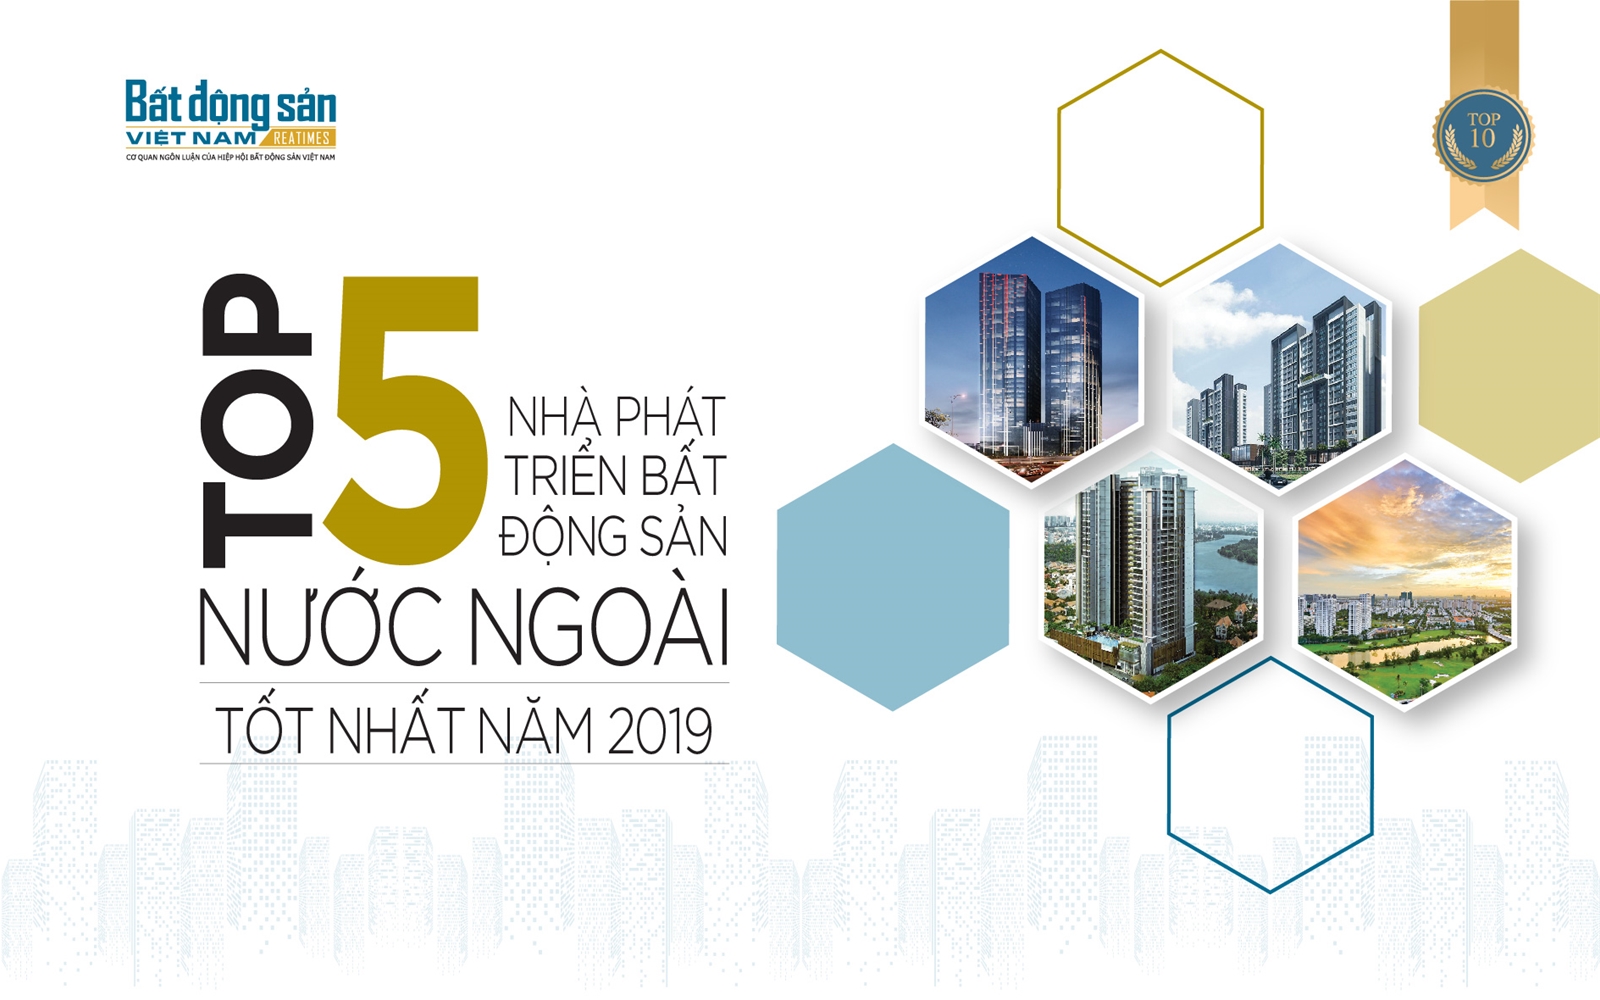 Top 5 nhà phát triển bất động sản nước ngoài tốt nhất tại Việt Nam năm 2019